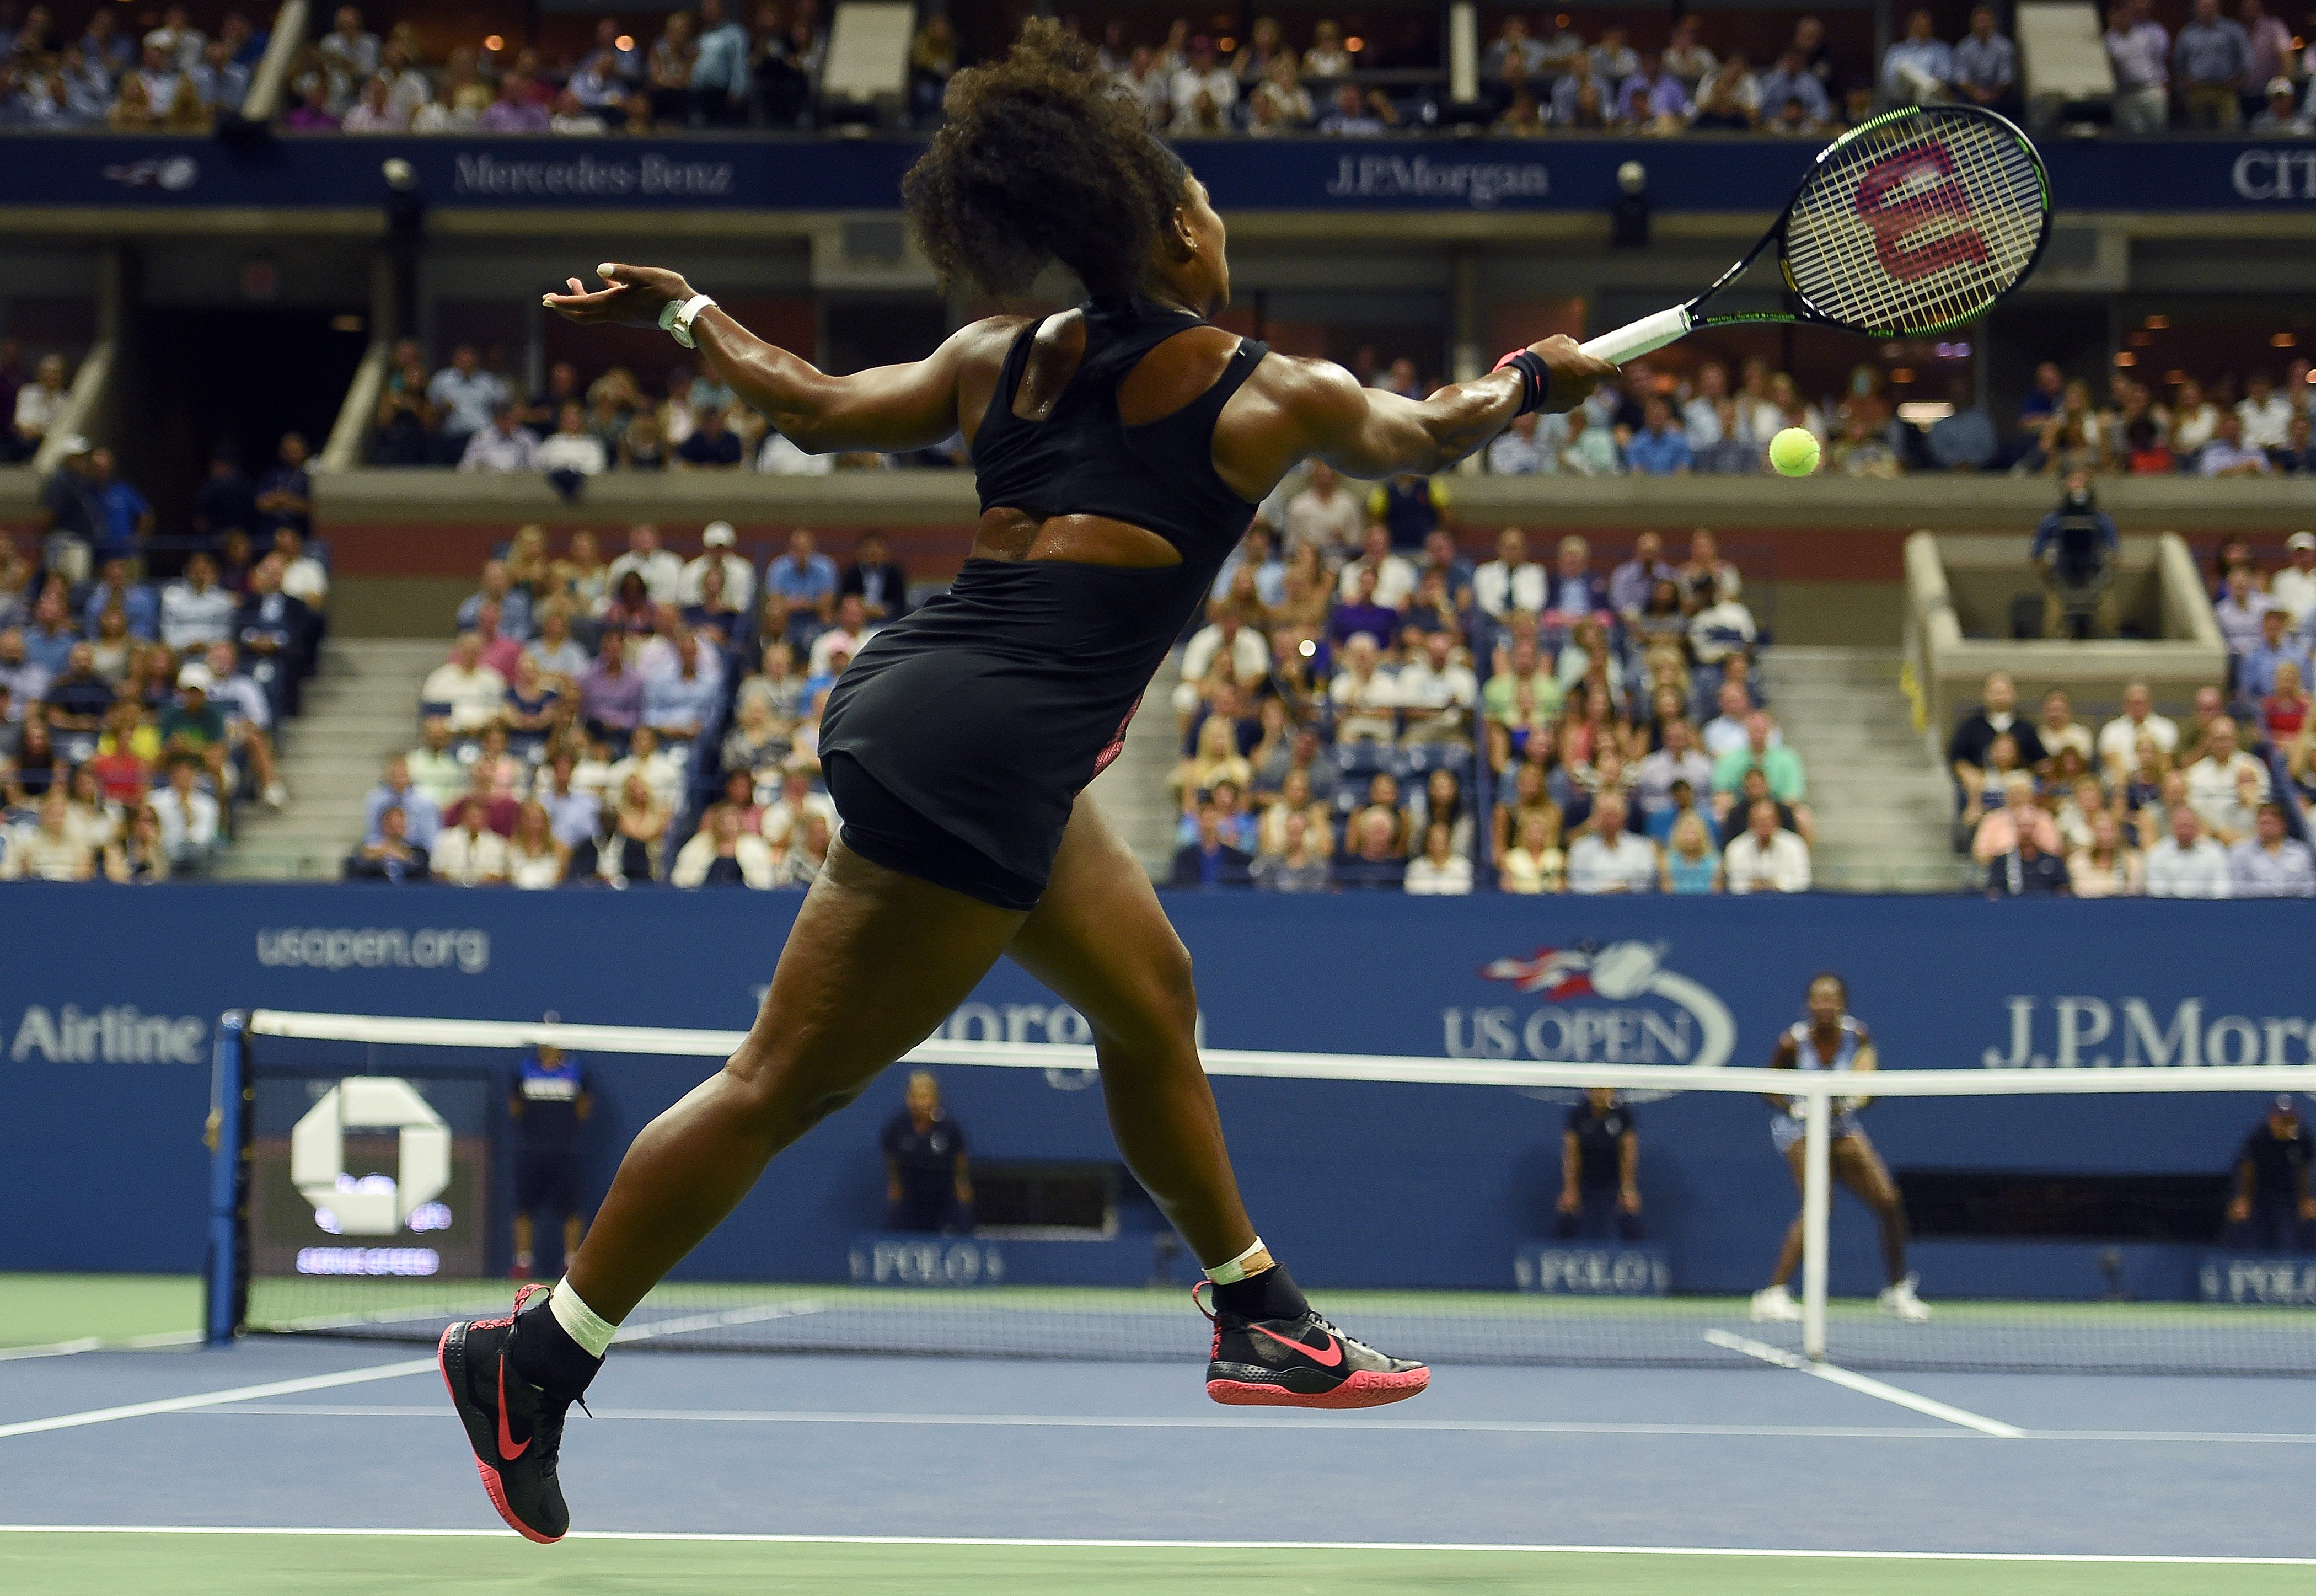  La rivalità tra Serena e Venus Williams